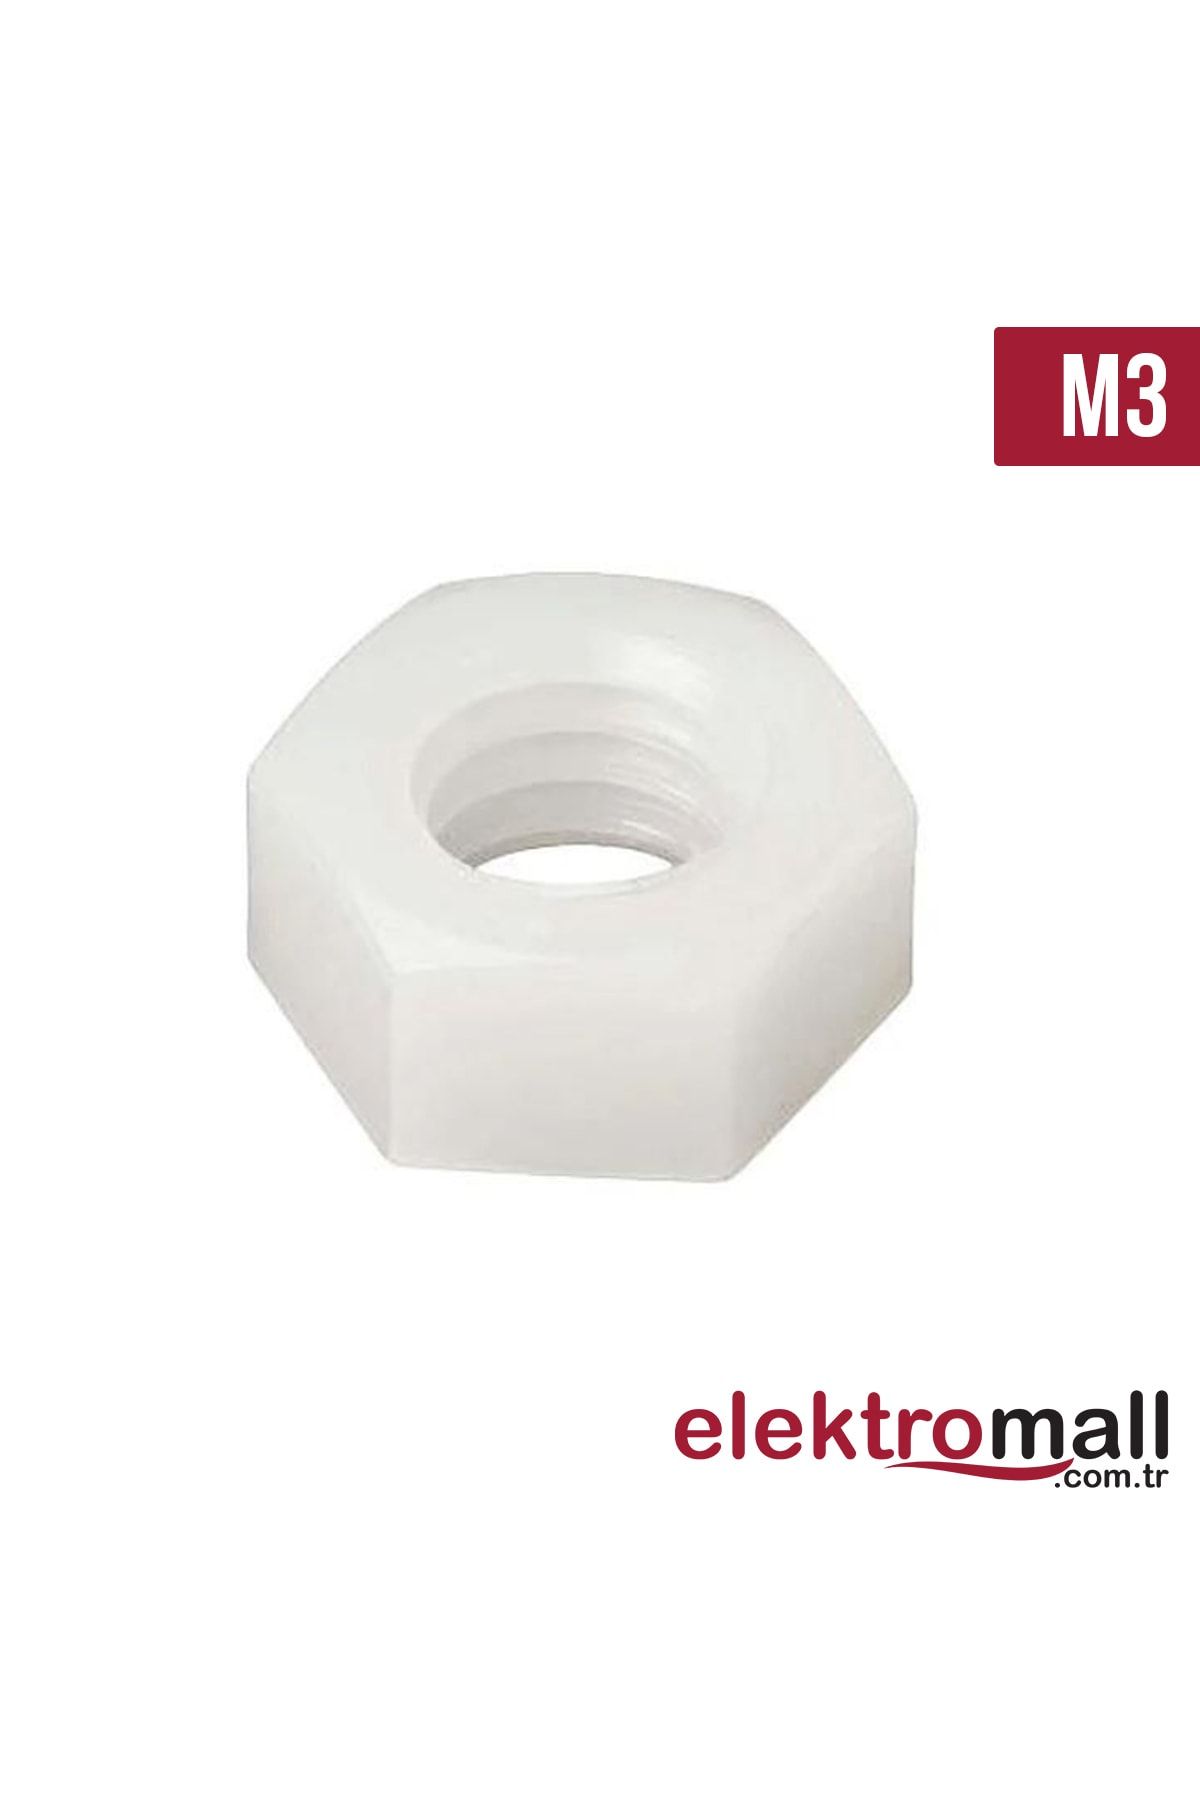 ELEKTROMALL M3 Altı Köşe Plastik Somun - 50 Adet